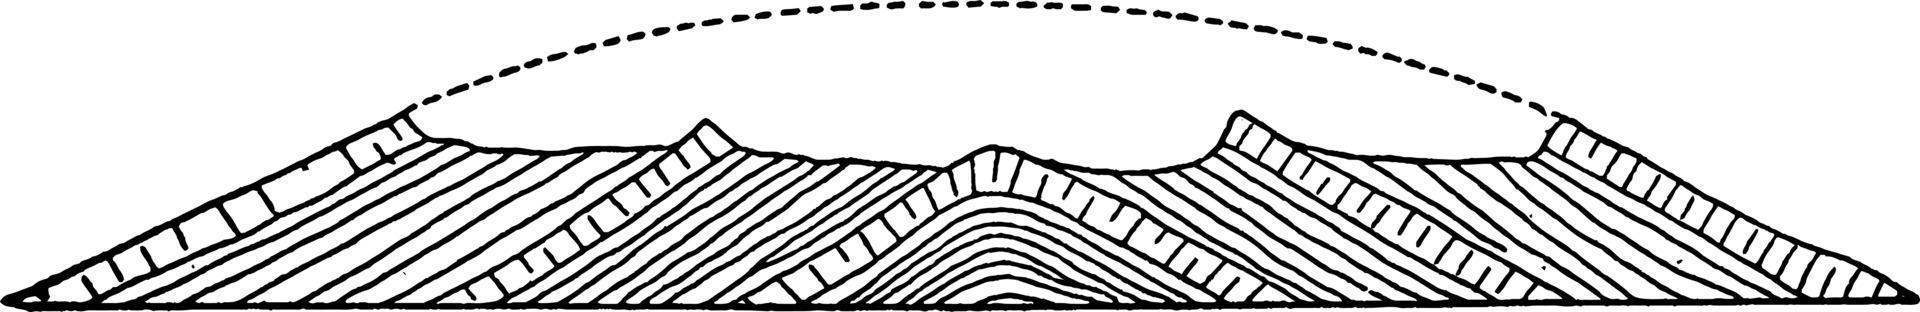 anticlinal erosionado, ilustración vintage vector